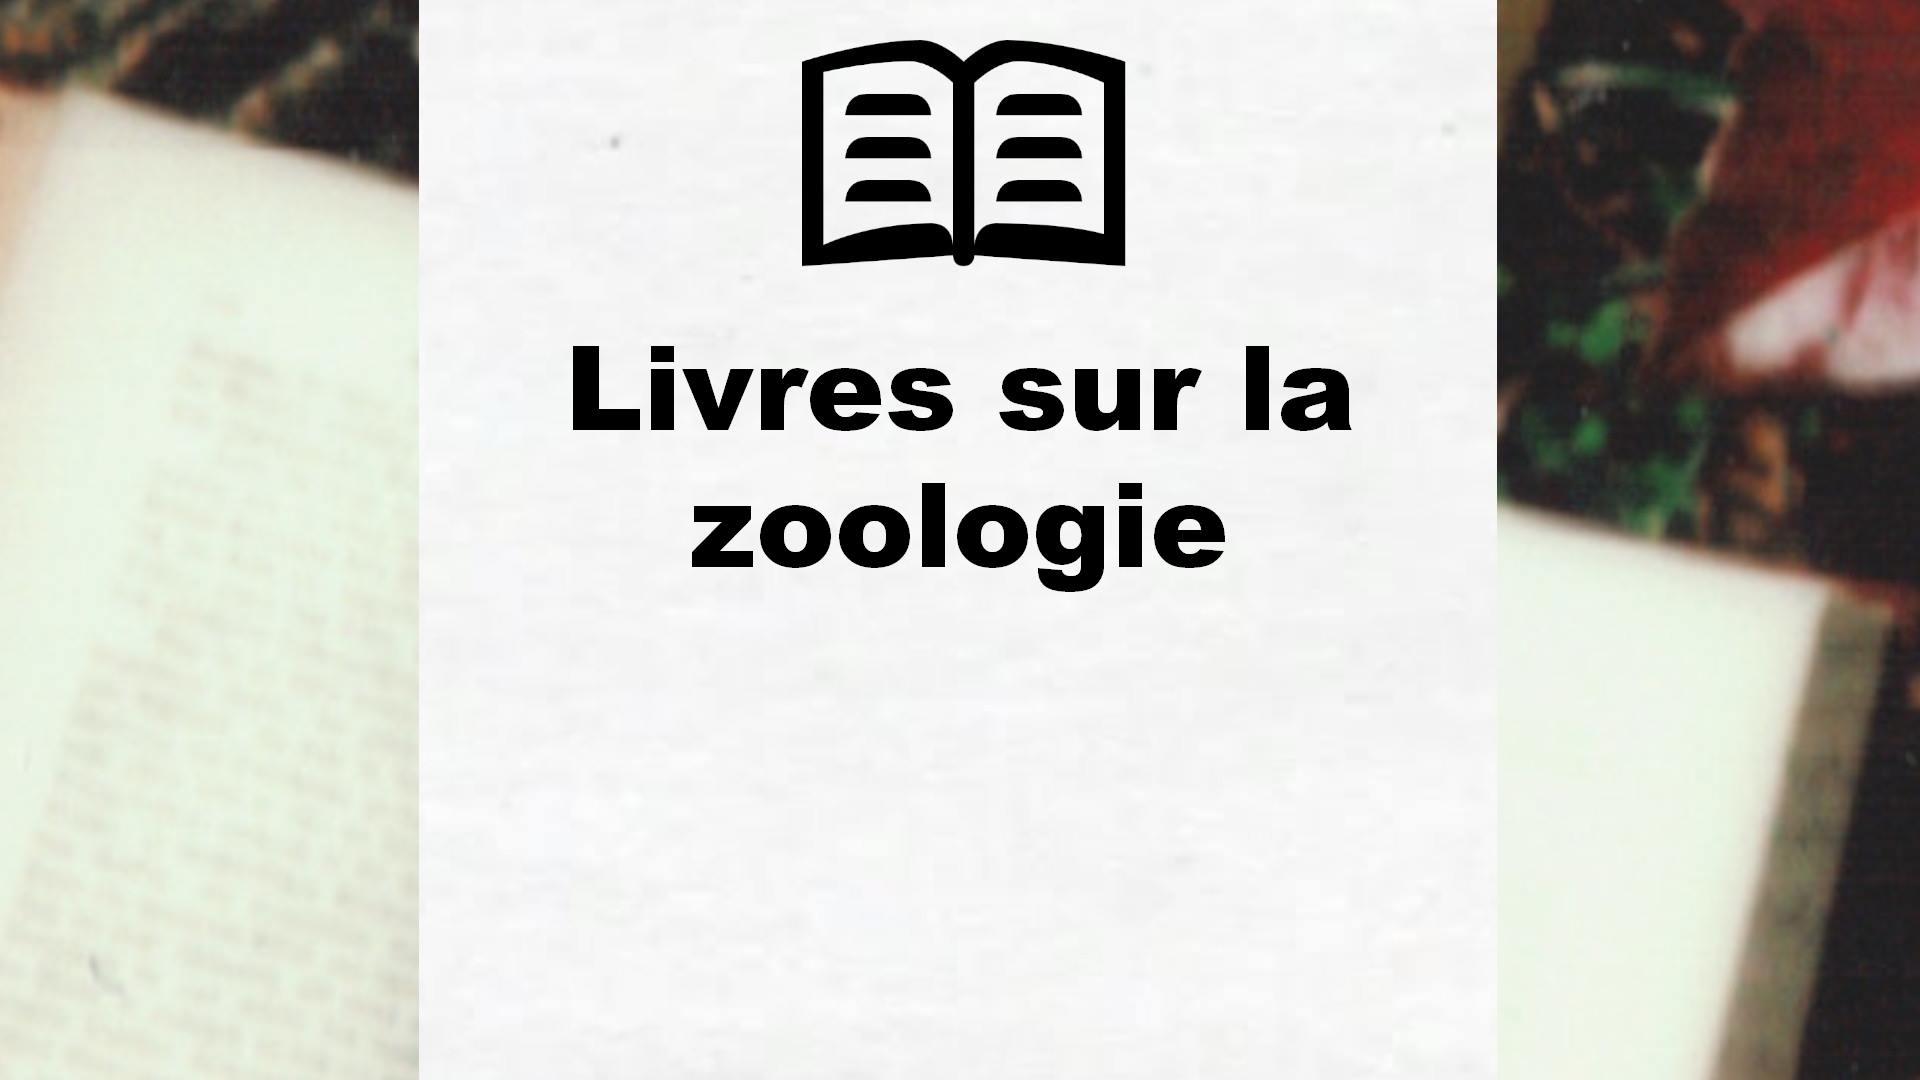 Livres sur la zoologie